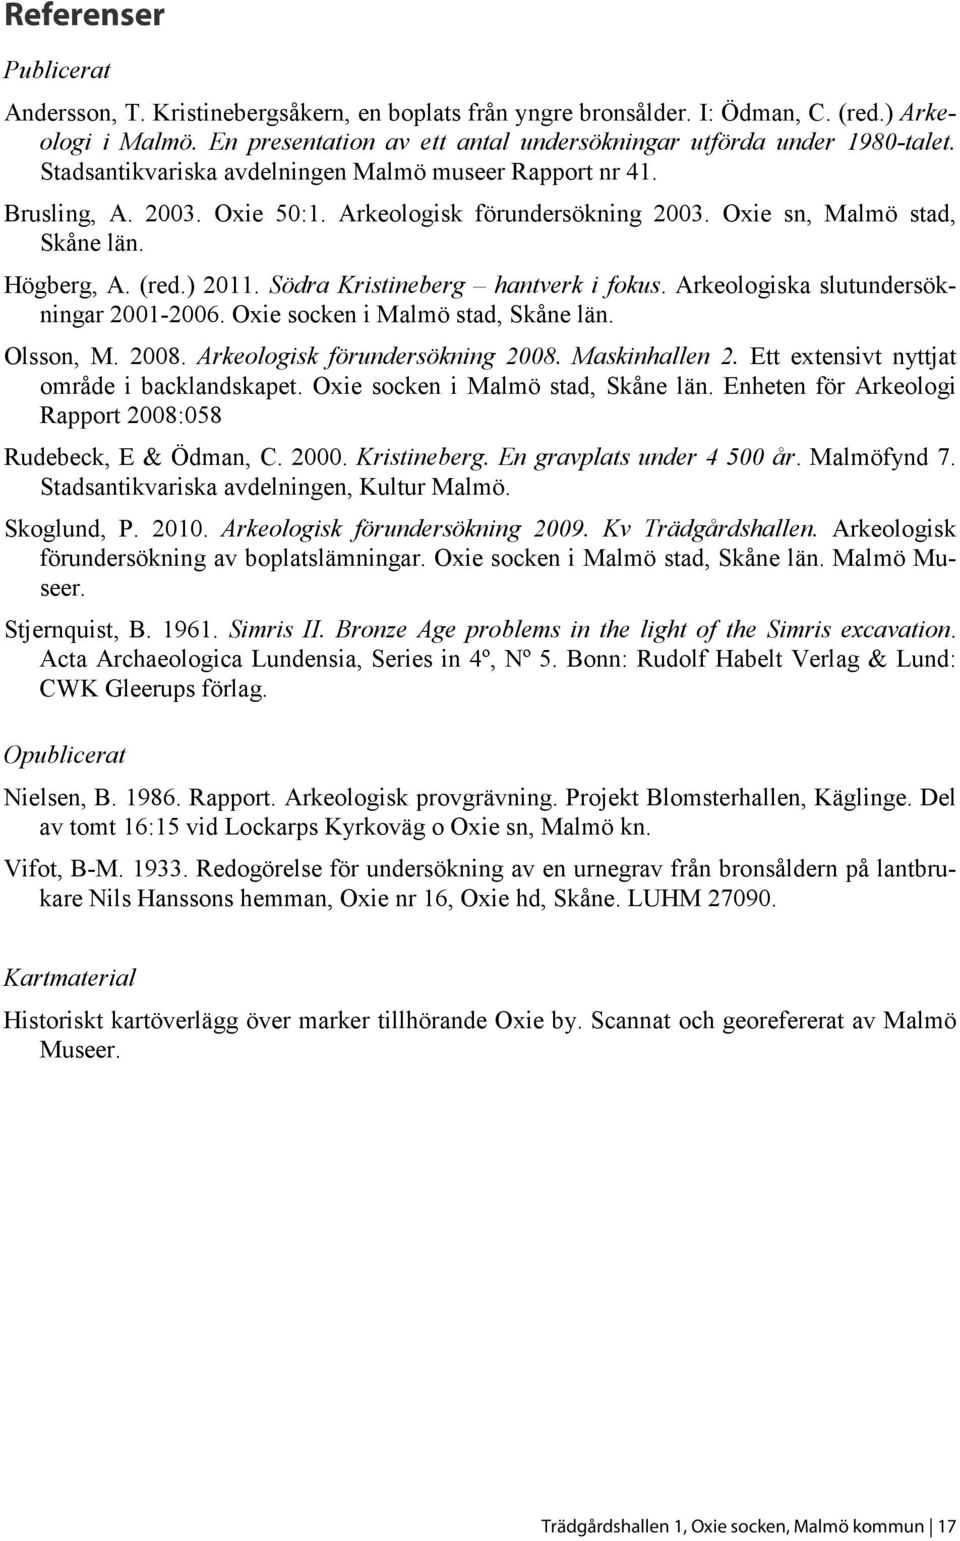 Södra Kristineberg hantverk i fokus. Arkeologiska slutundersökningar 2001-2006. Oxie socken i Malmö stad, Skåne län. Olsson, M. 2008. Arkeologisk förundersökning 2008. Maskinhallen 2.